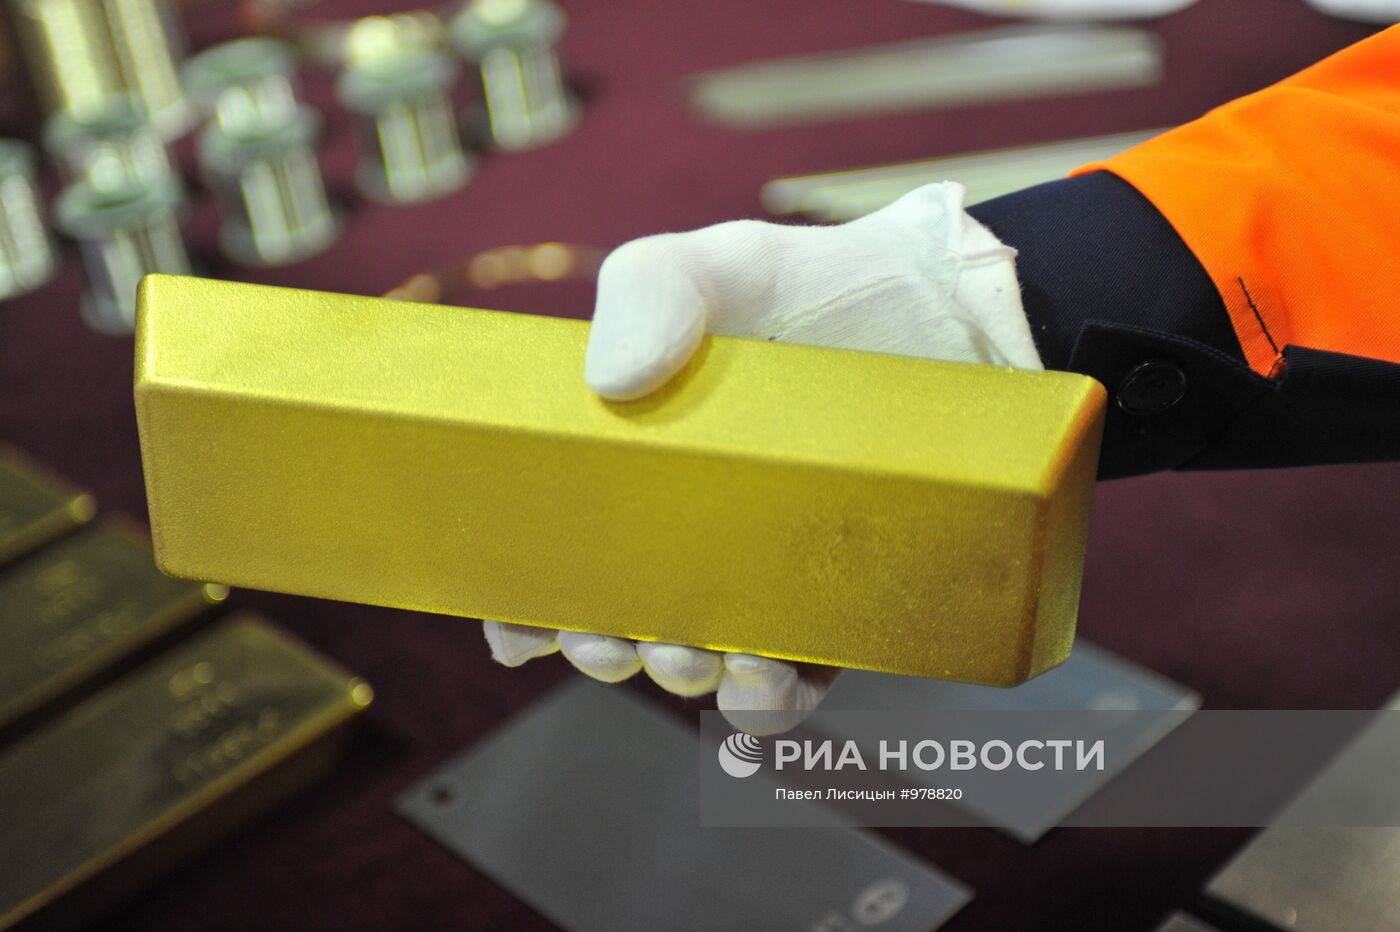 Работа Екатеринбургского завода по обработке цветных металлов